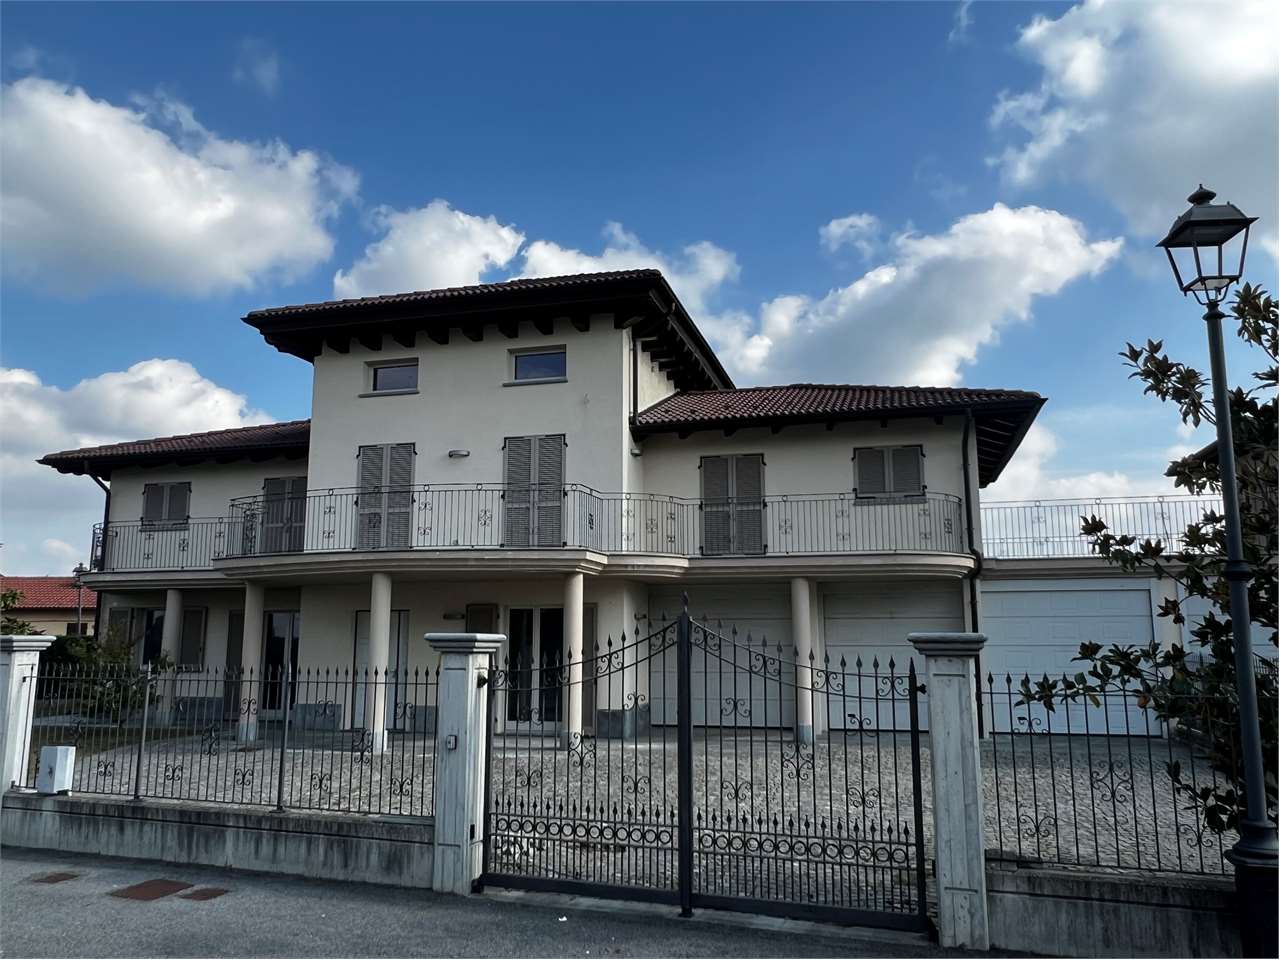 Villa in vendita a Camerano Casasco, 8 locali, prezzo € 300.000 | PortaleAgenzieImmobiliari.it